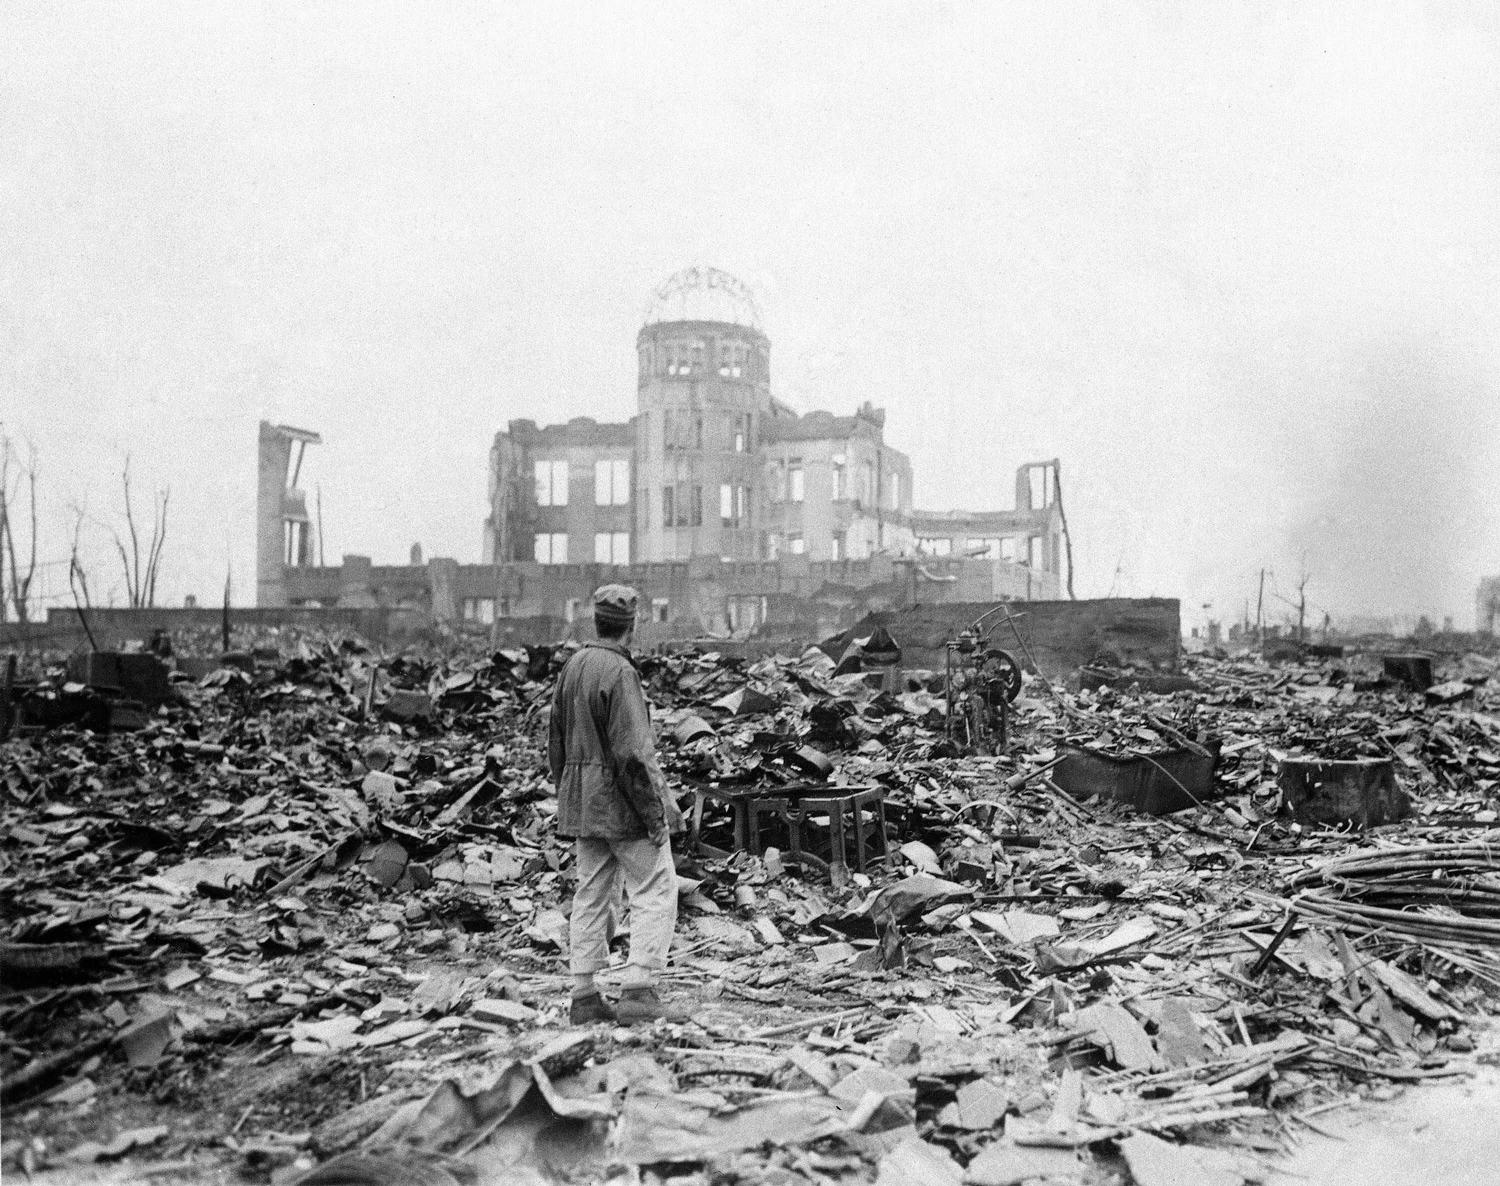 Den 6 augusti 1945 togs den här bilden på vad som tidigare var en biograf i Hiroshima, Japan.